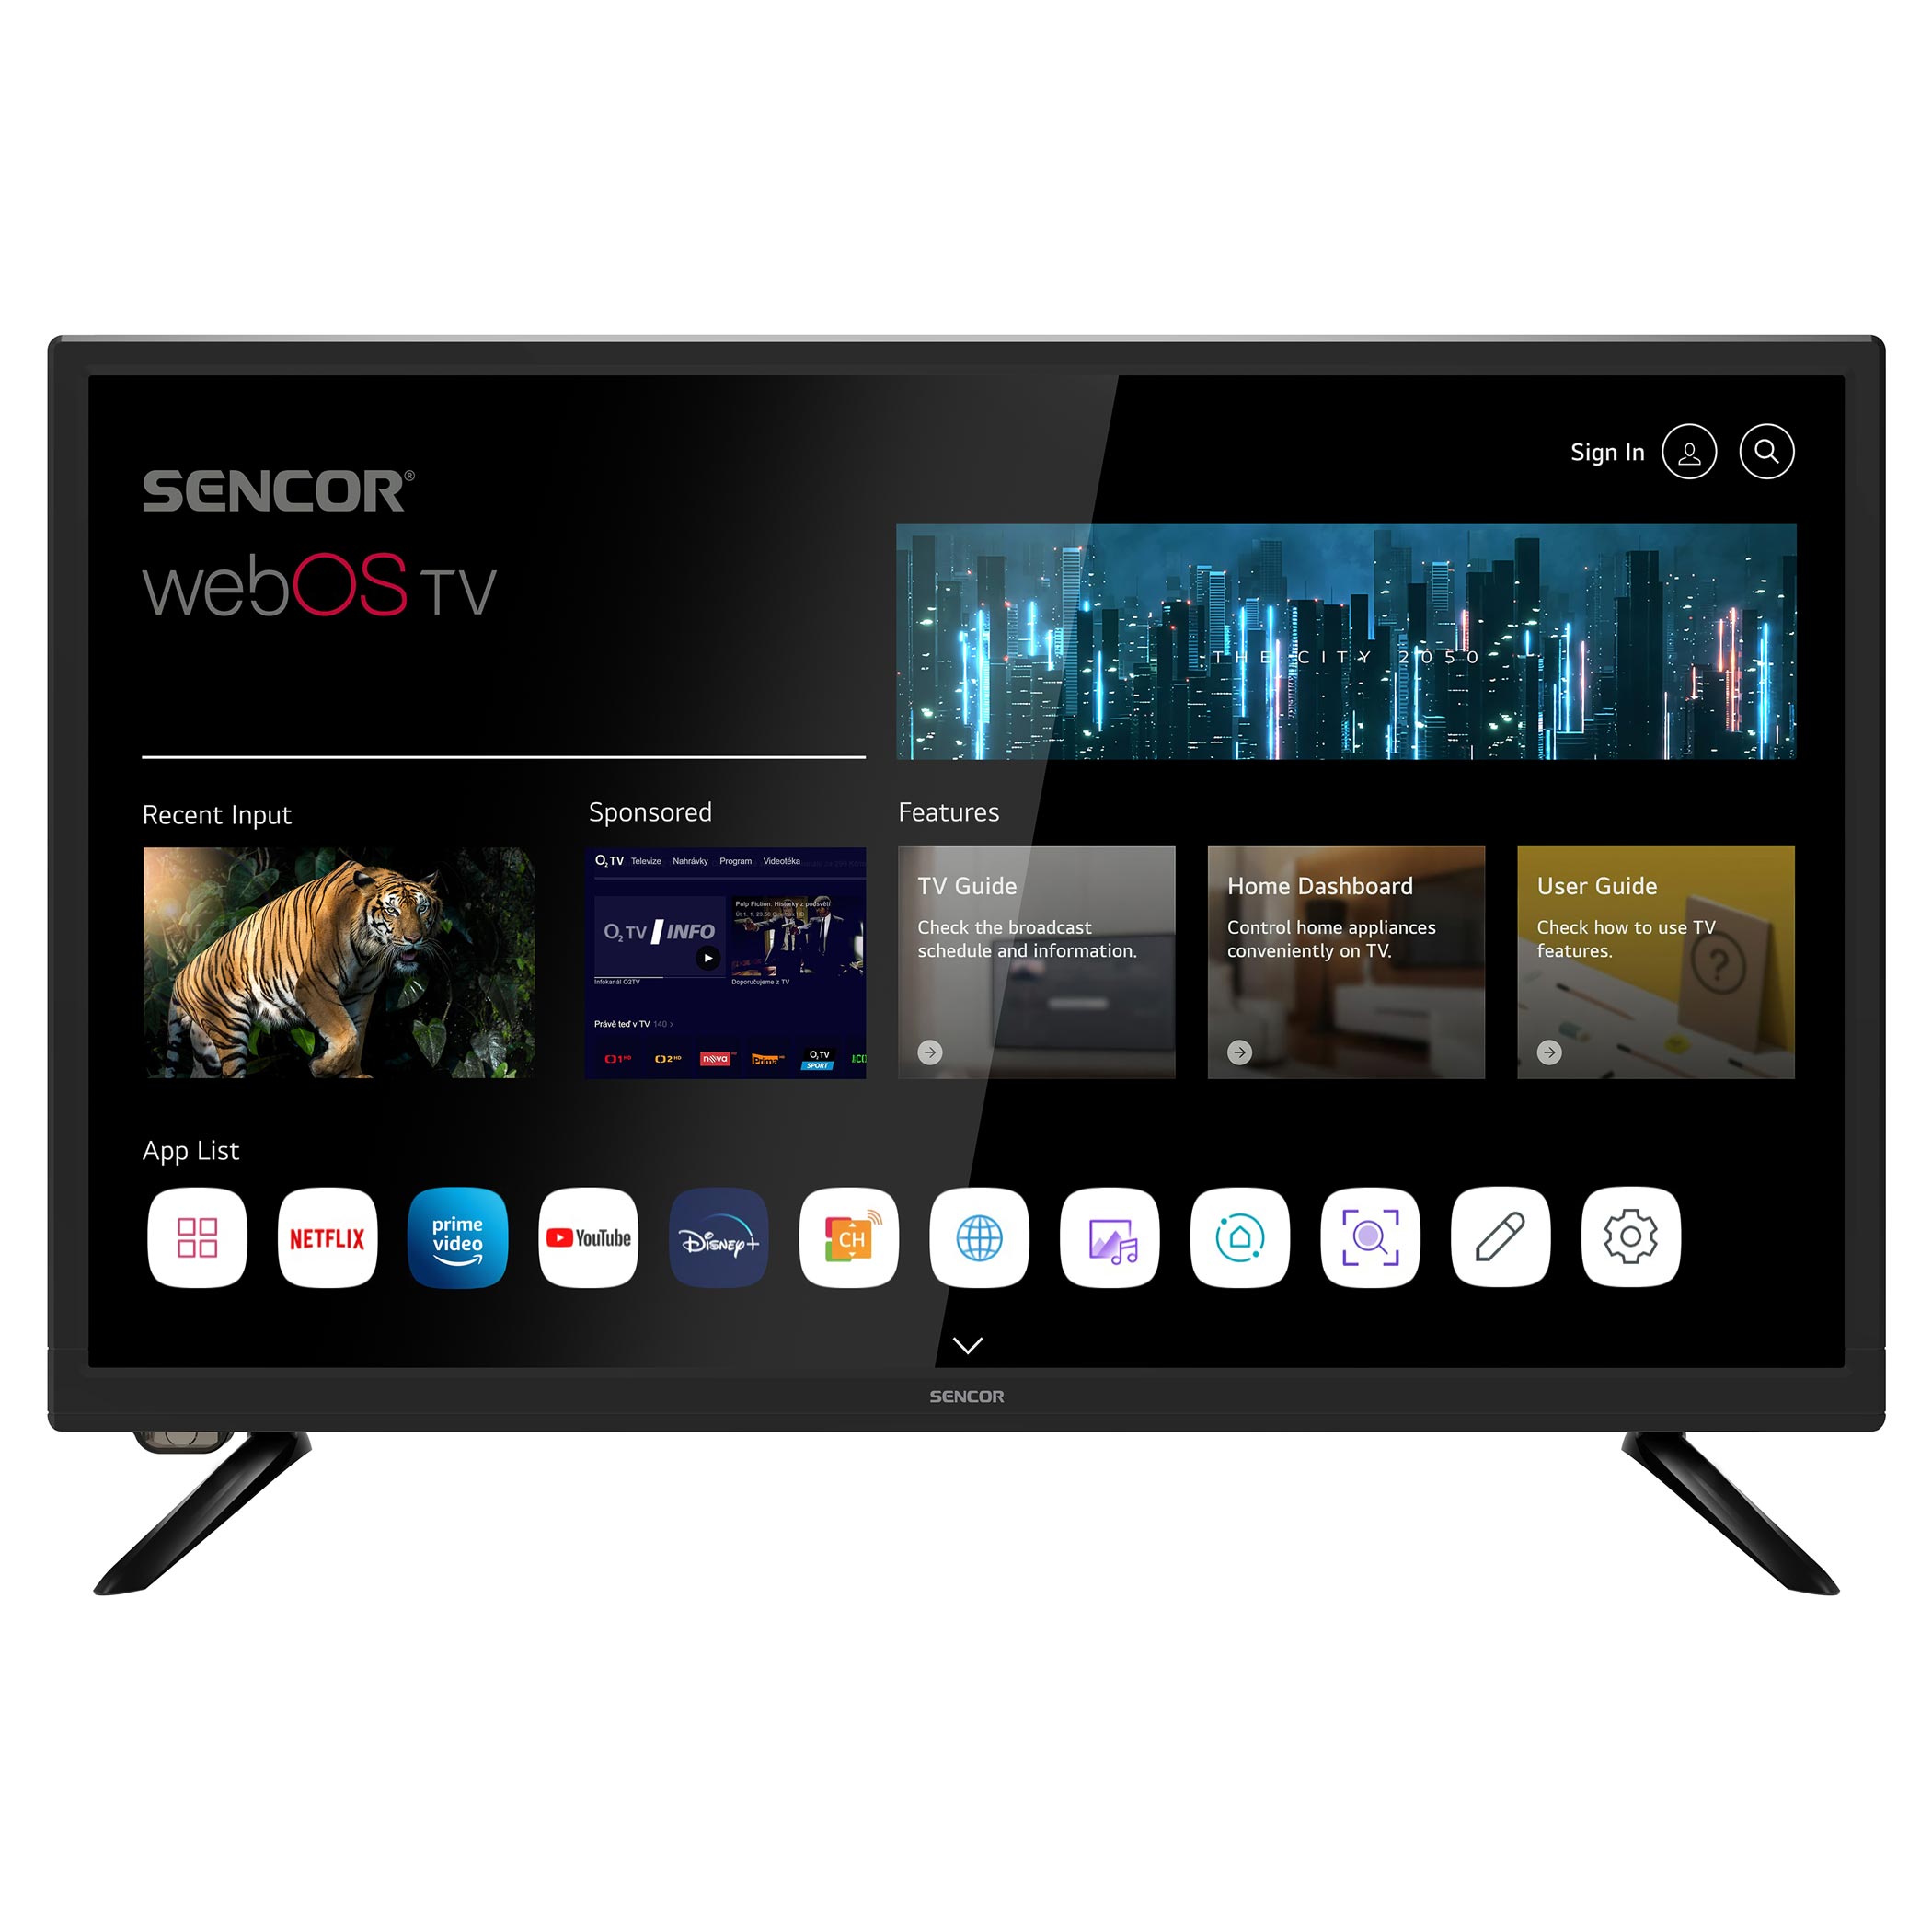 Lg Tv Led 24 60cm Téléviseur Hd Wi-fi Bluetooth Connecté Smart Tv